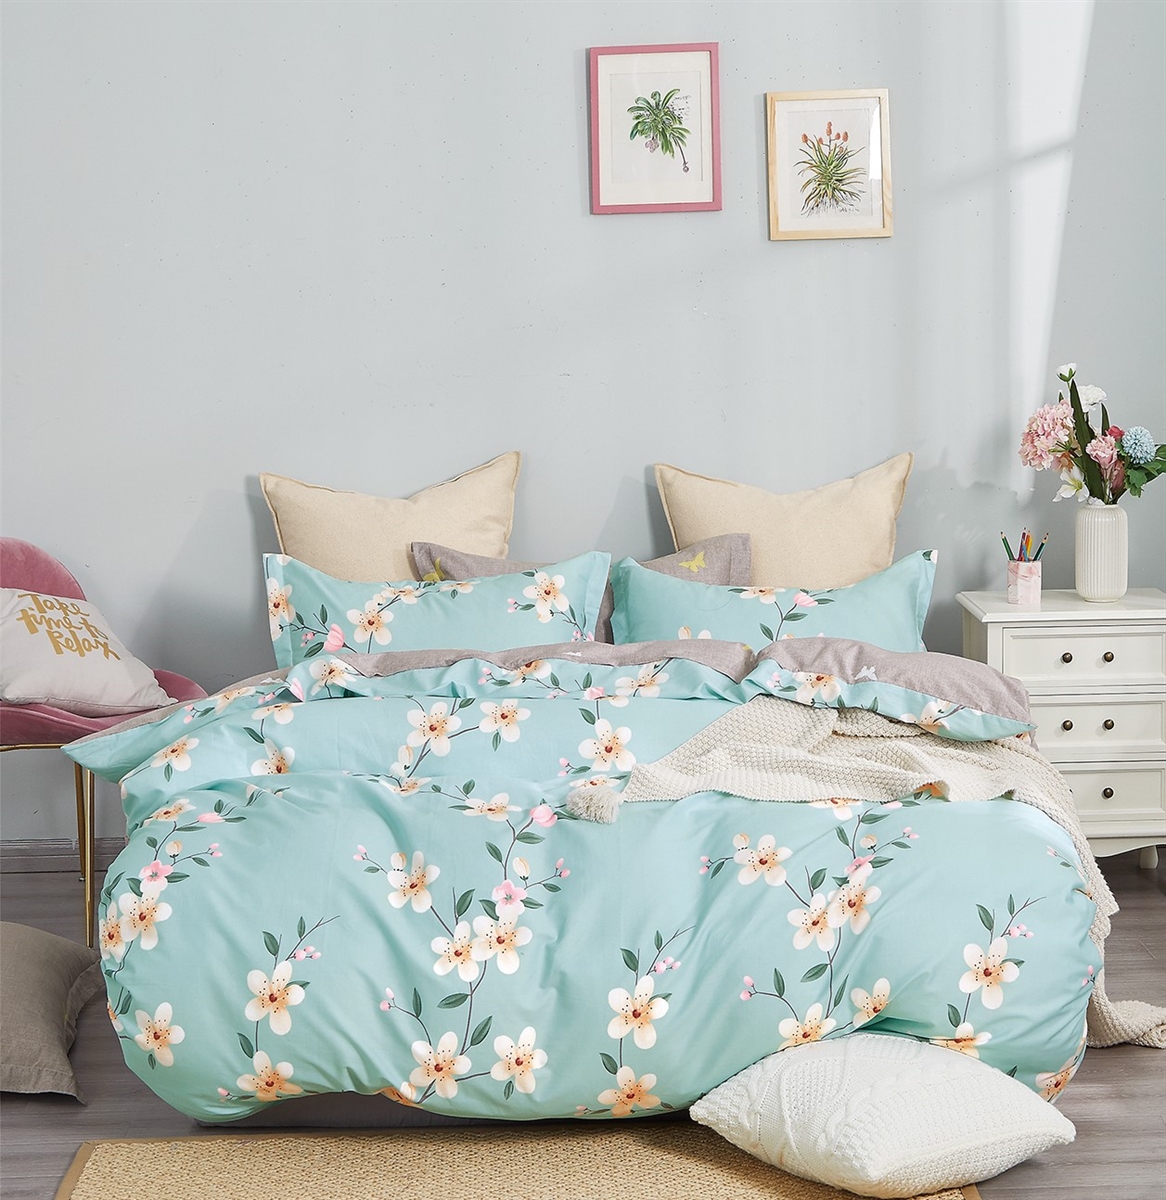 Buy Blue Floral Bedding Set Online